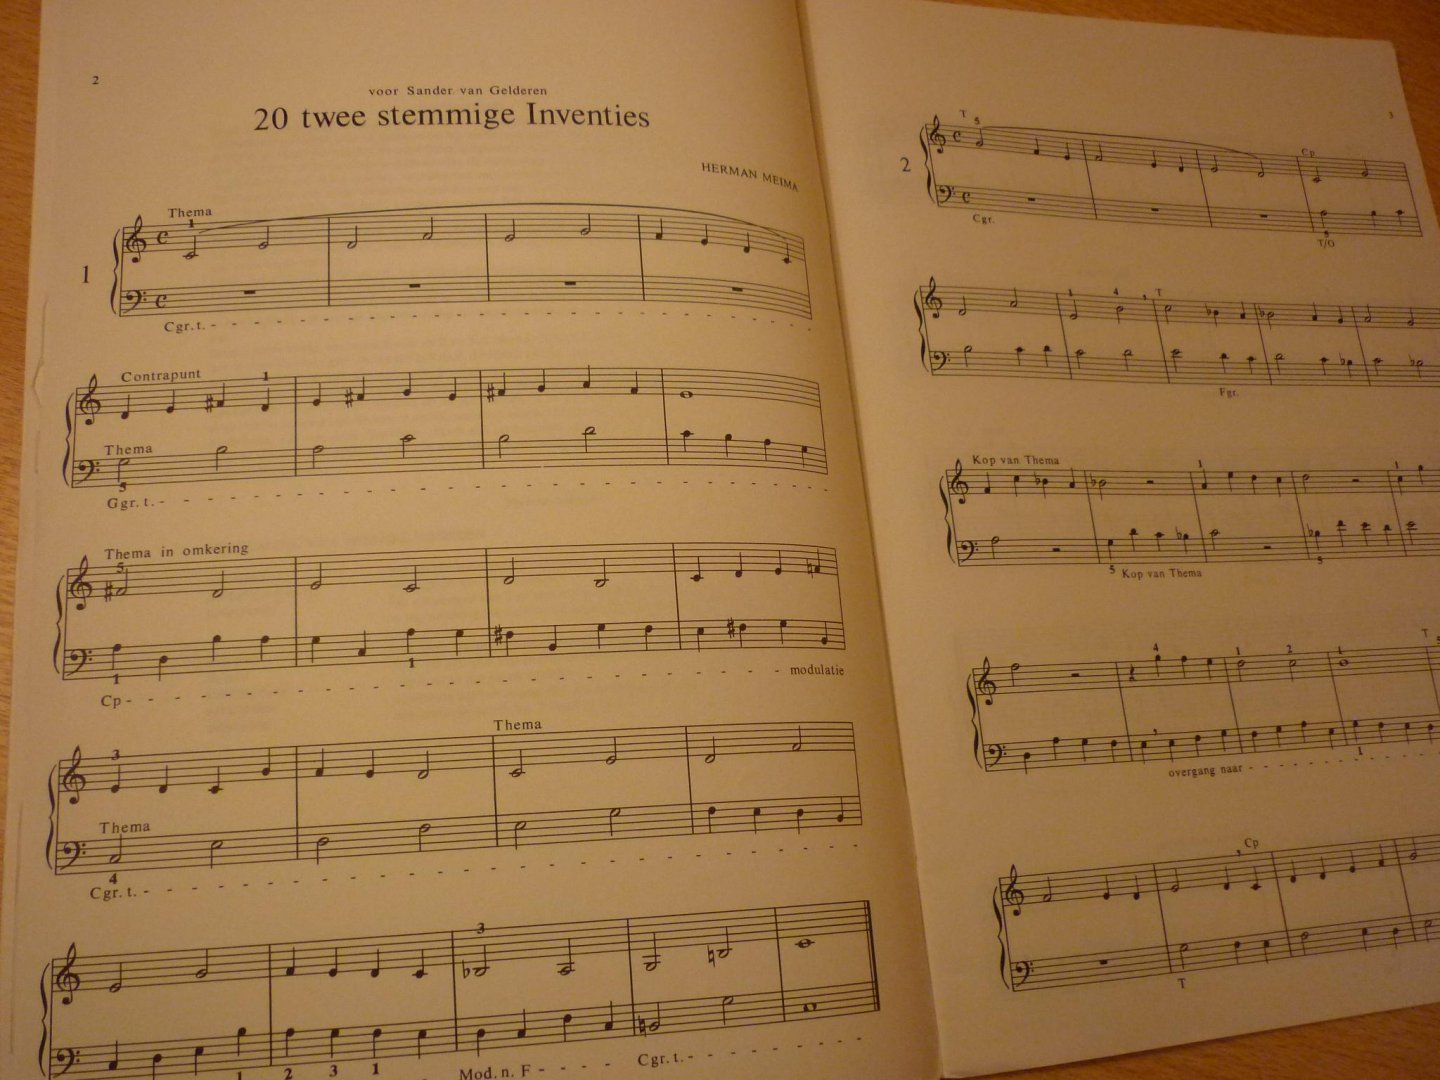 Meima; Herman - 20 tweestemmige inventies voor piano / orgel